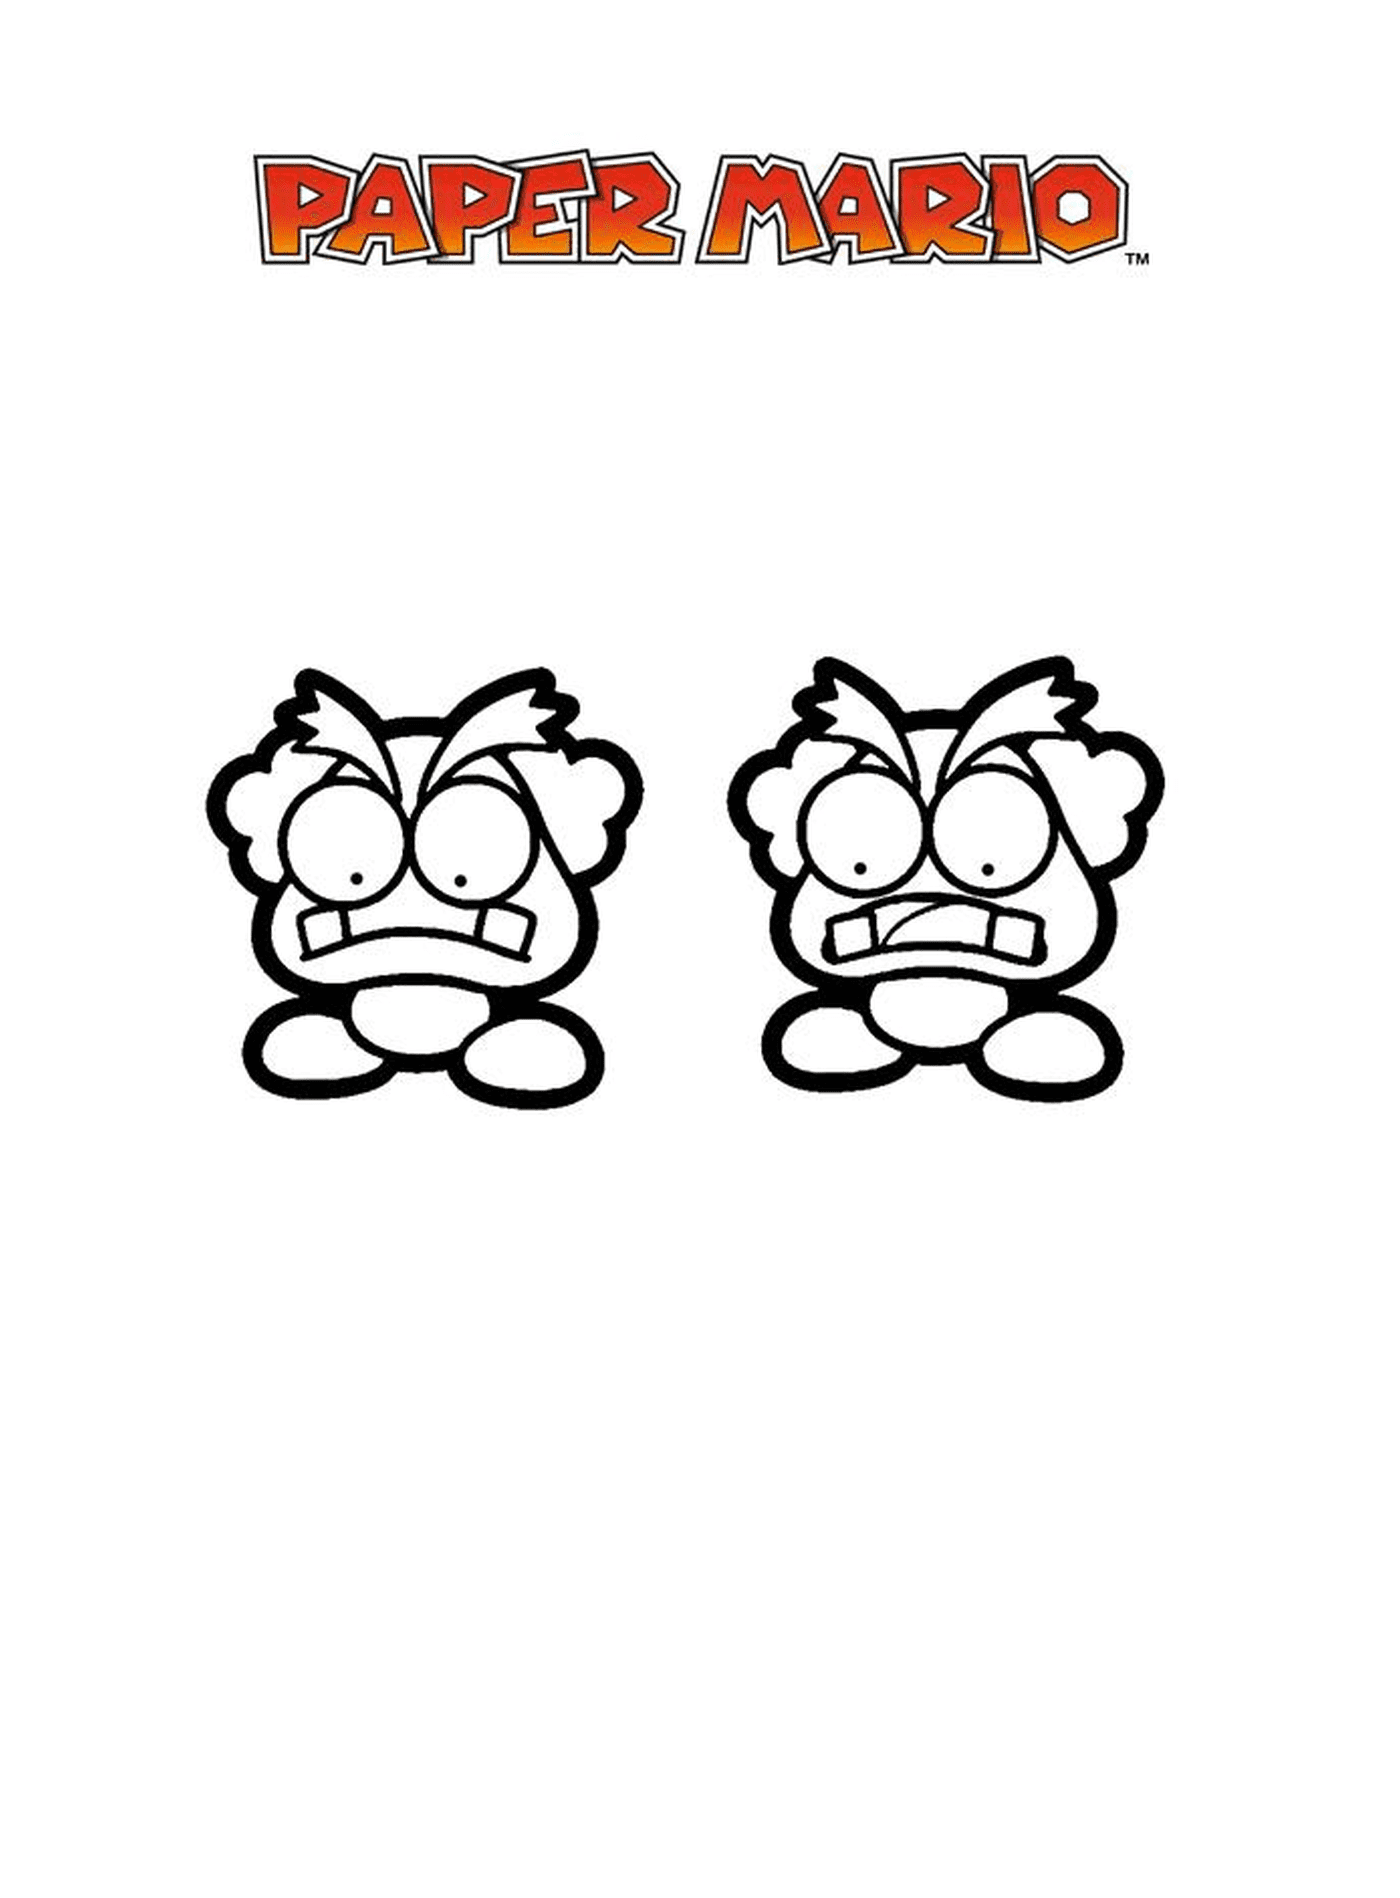  Mario Paper Millennium 20, un par de caras de dibujos animados con expresiones enojadas 